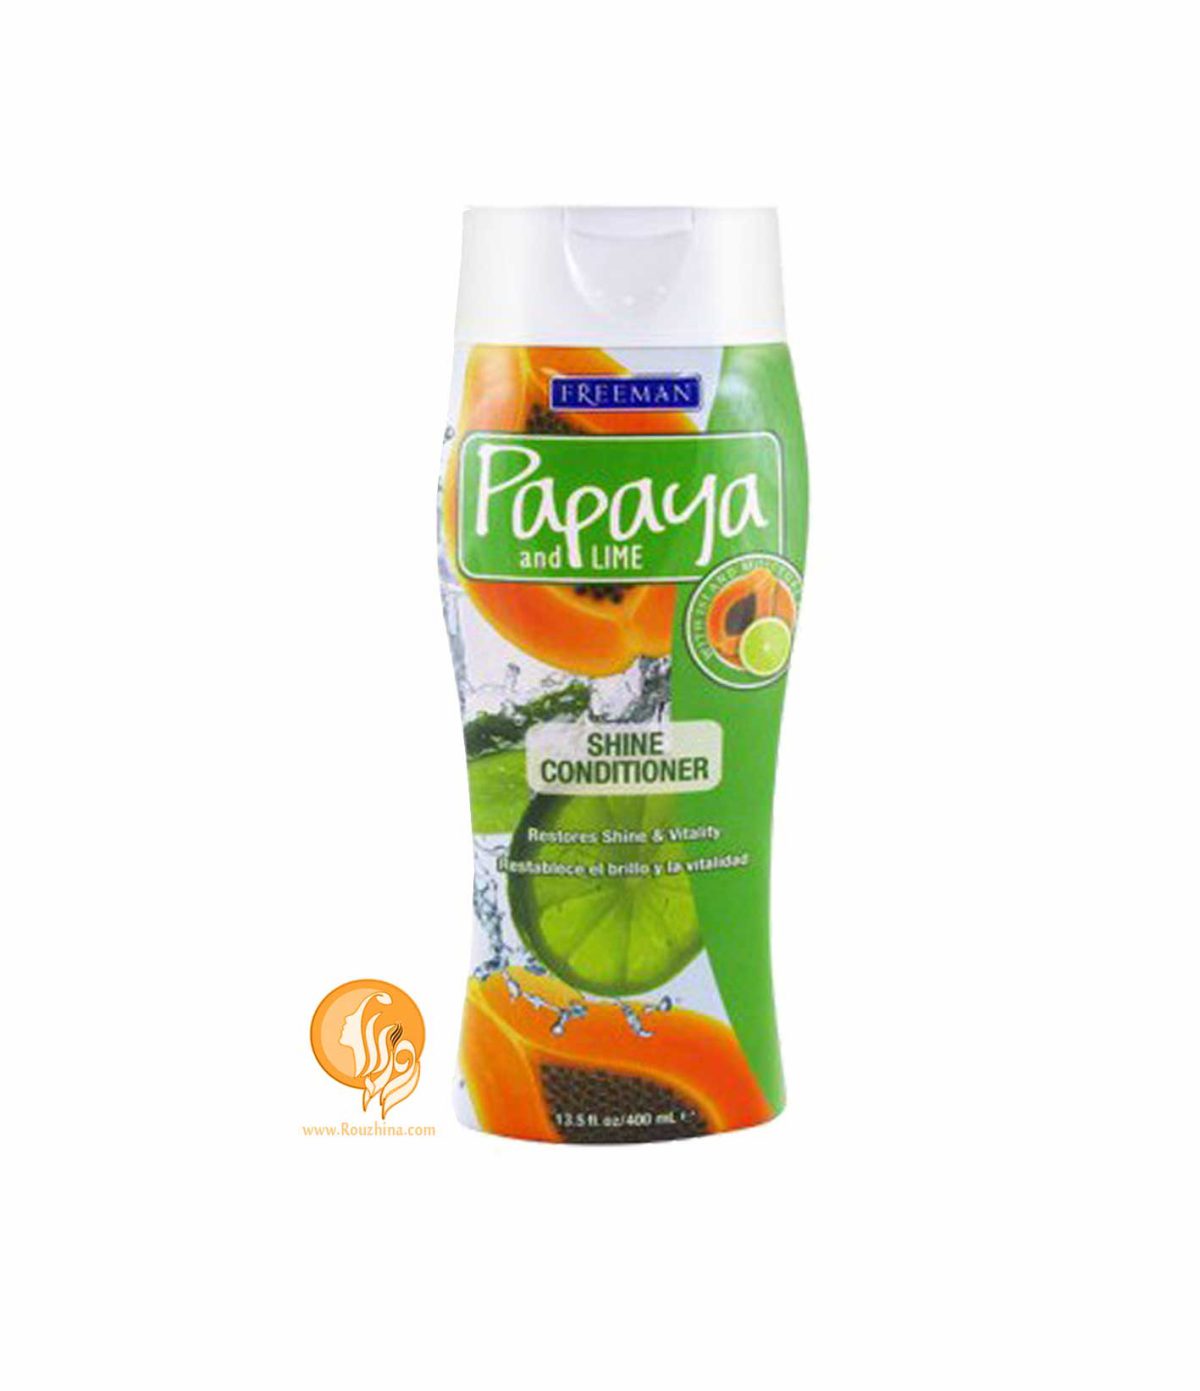 نرم کننده استوایی پاپایا و لیمو (درخشان کننده) سرشار از آنتی اکسیدانfreeman papaya and lemon conditioner